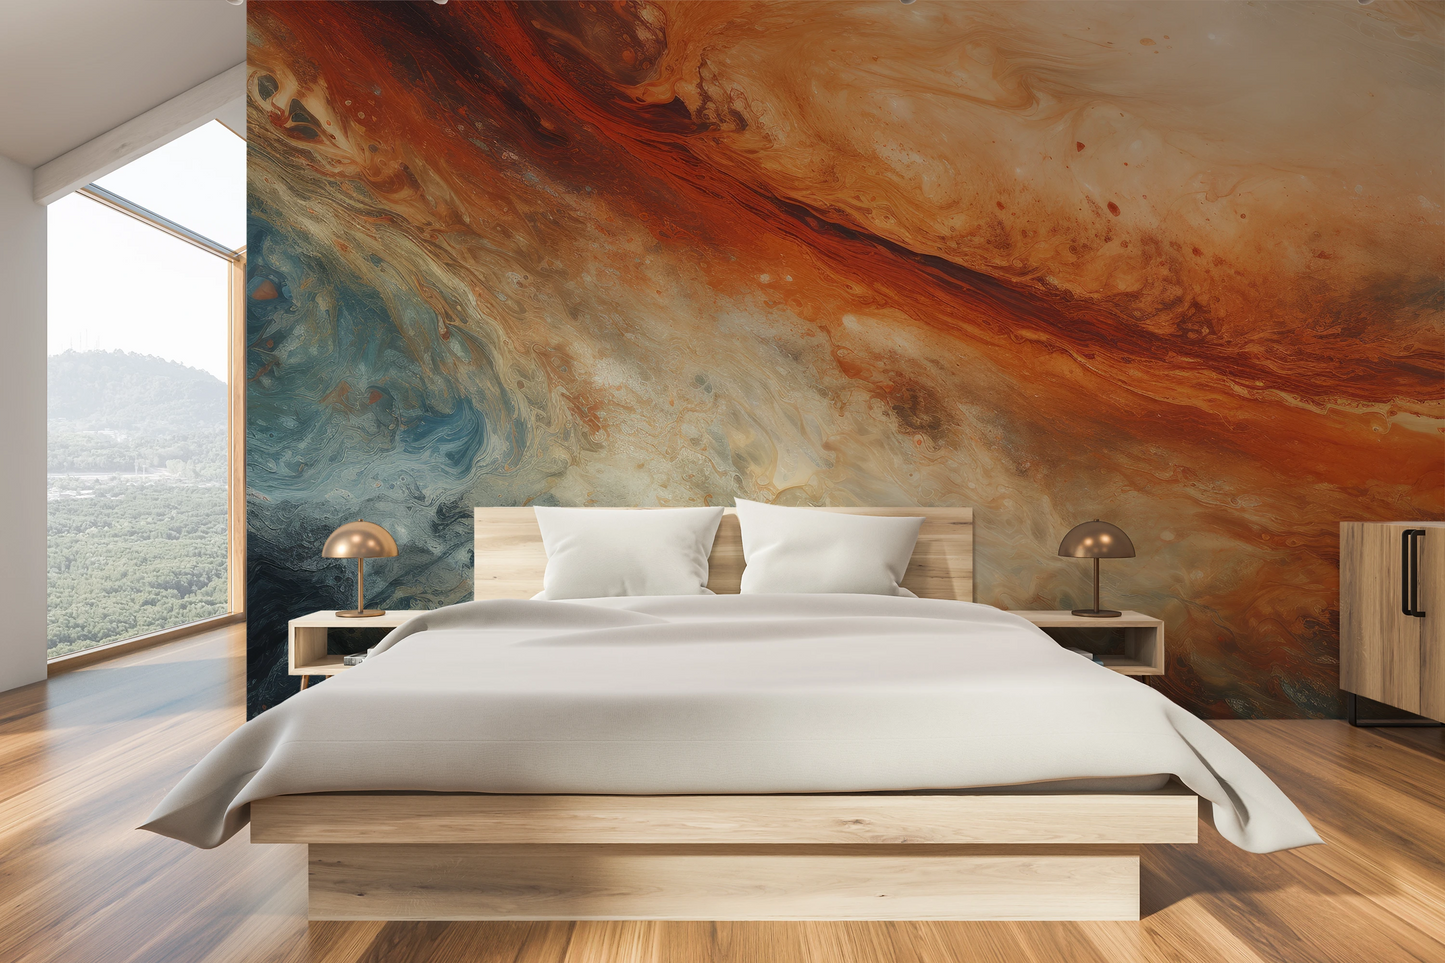 Fototapeta malowana o nazwie Jupiter's Storm pokazana w aranżacji wnętrza.